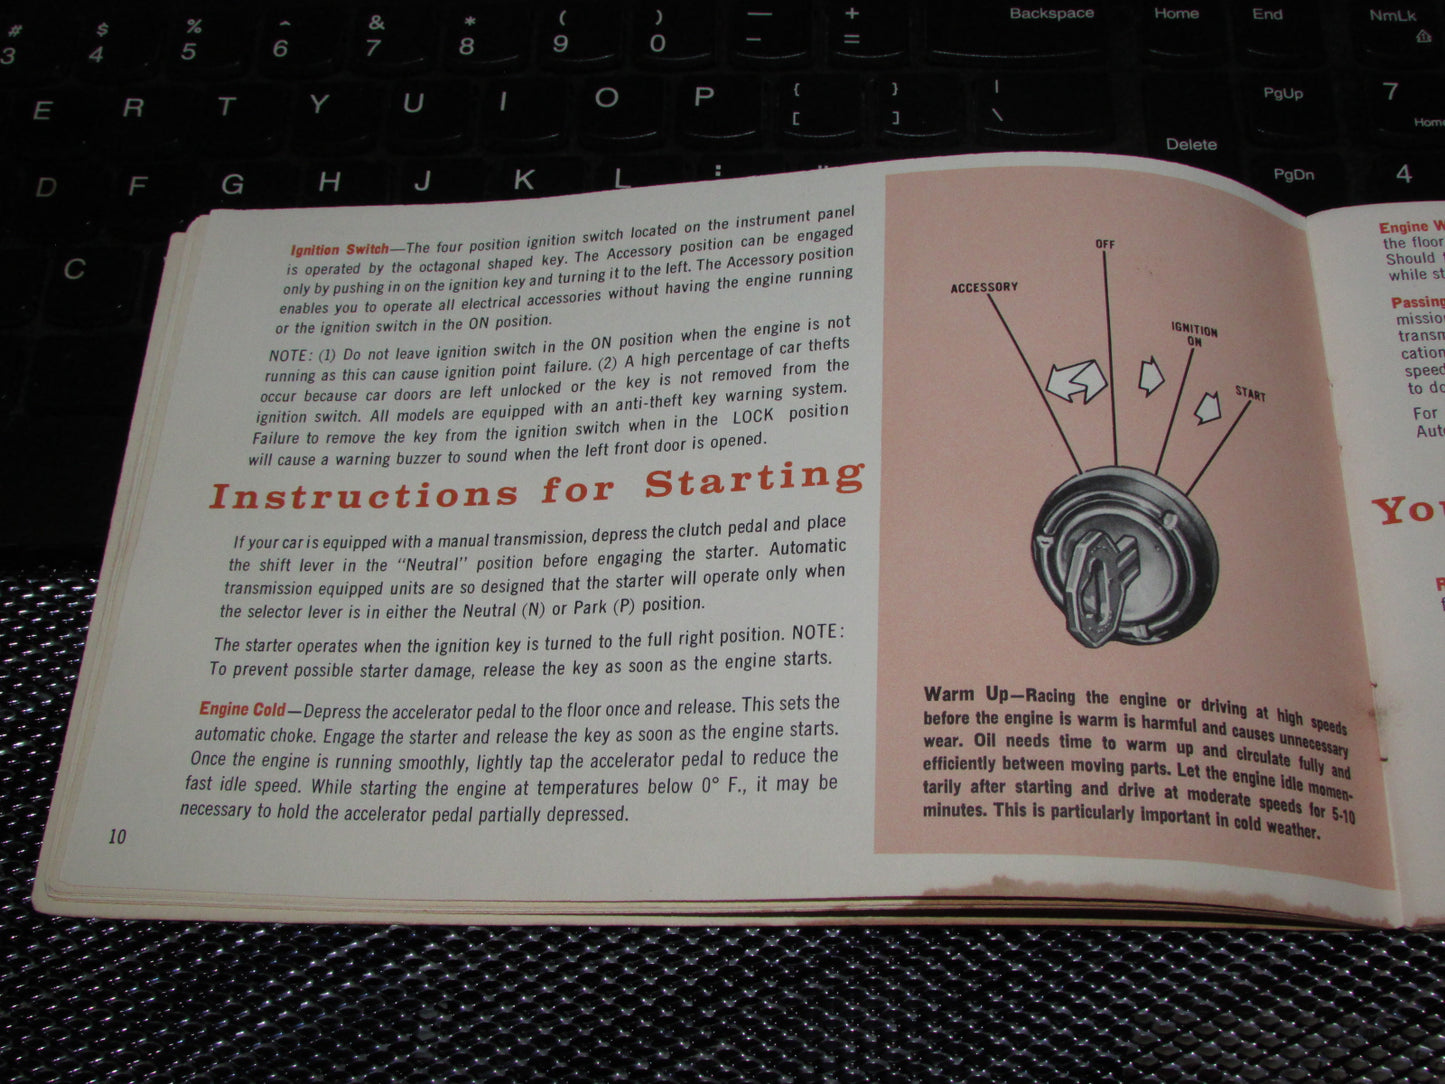 Pontiac Firebird (1968) Owners Manual